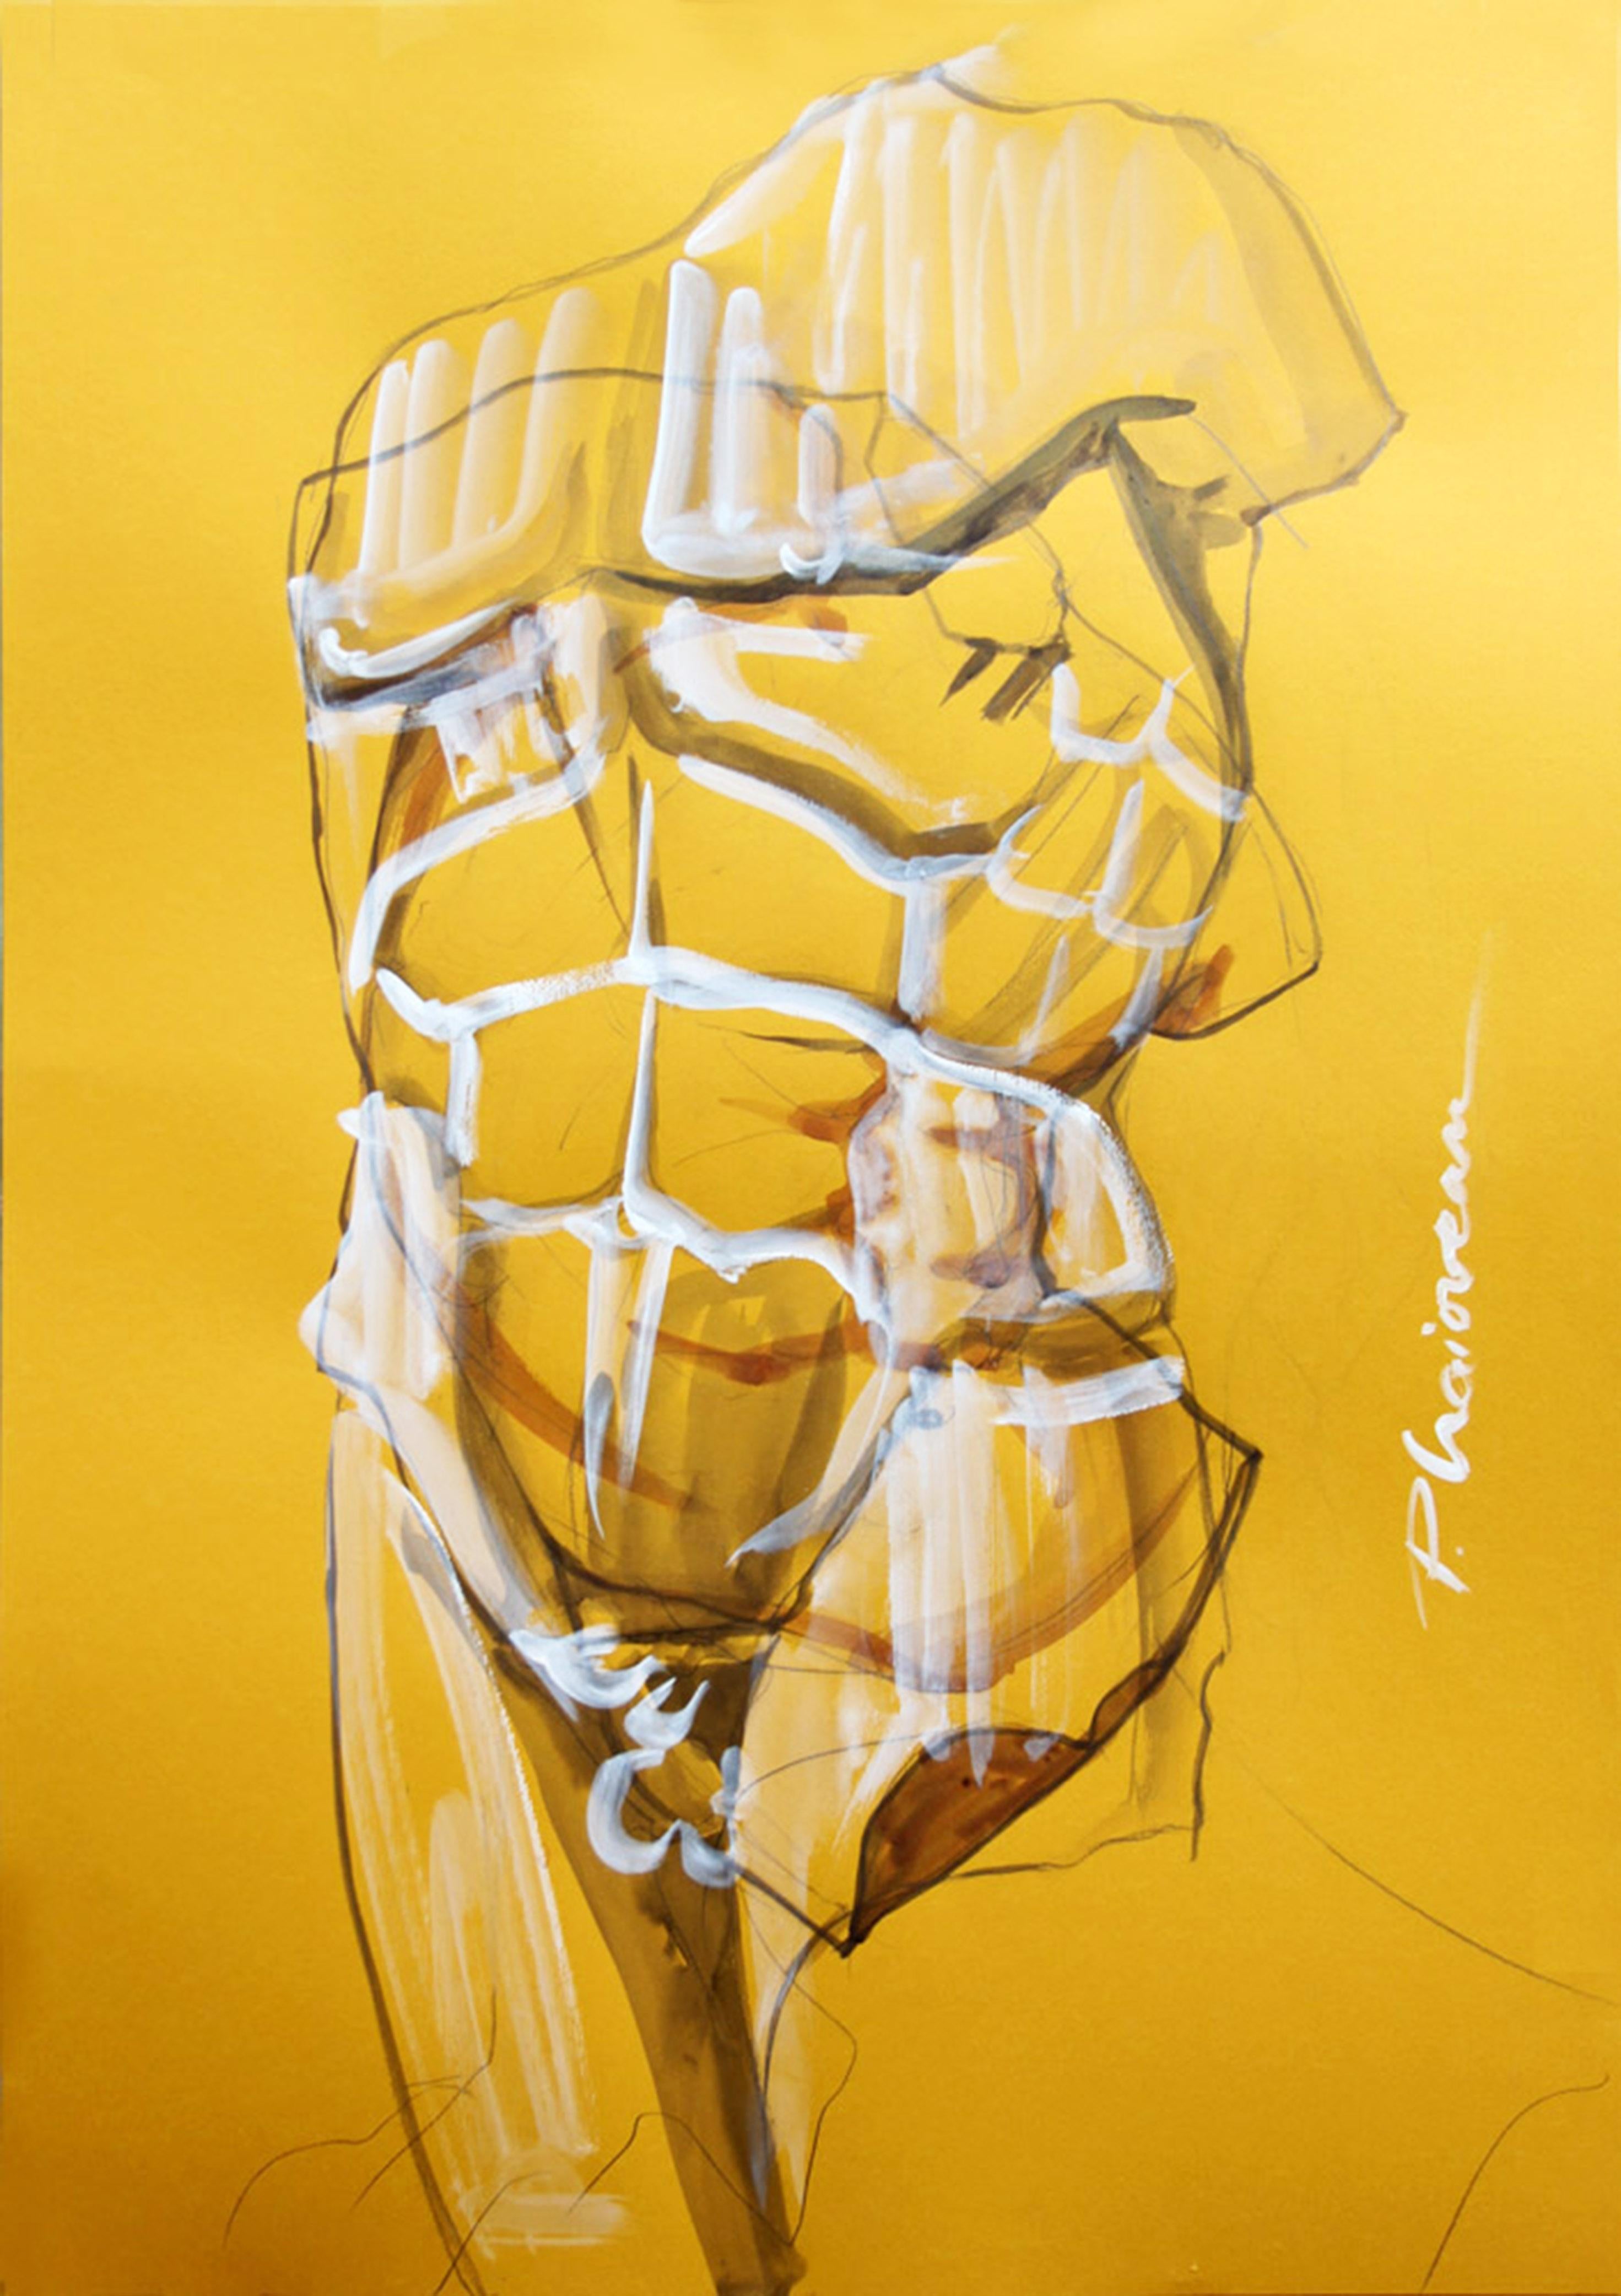 Body Double
Originalkunst, signiert
100x70cm / 30x27in
Tusche, Graphit, Tempera auf Papier
Großformat, wird in einer Rolle direkt aus dem Studio des Künstlers geliefert

Die Zeichnung ist mit 2 Holzteilen oben und unten befestigt, um sie gerade zu